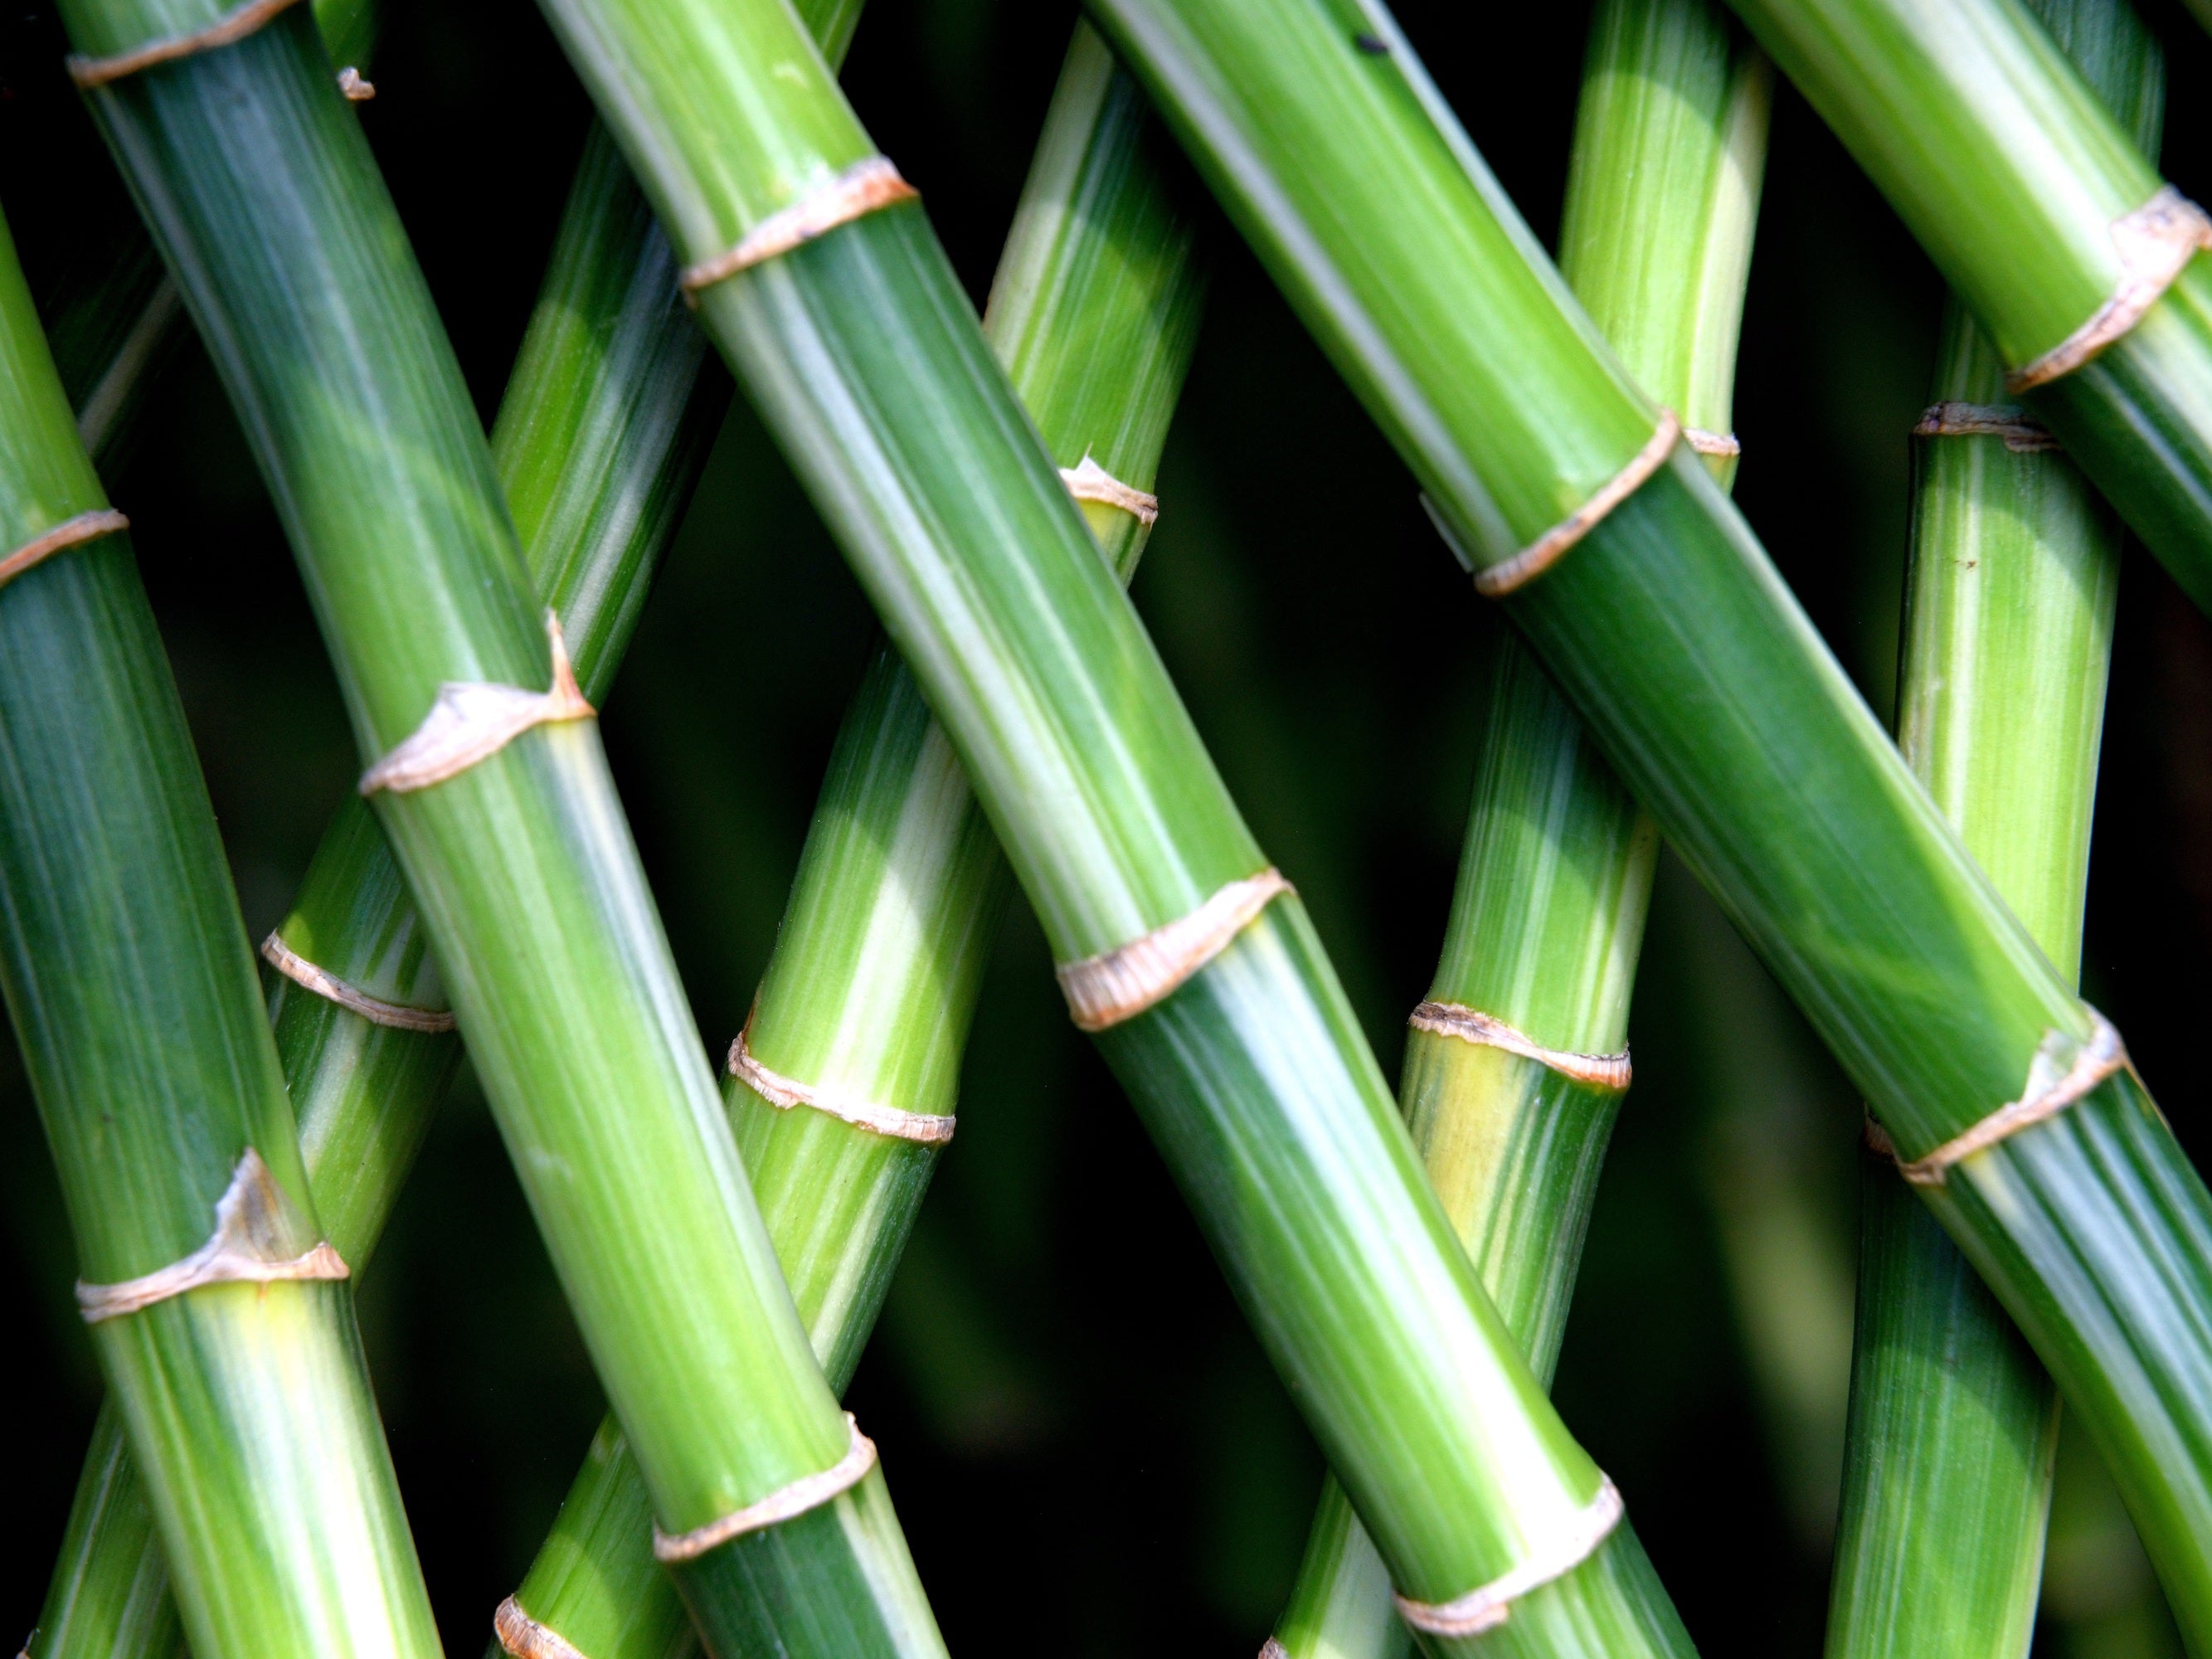 Le bambou, une ressource naturelle aux multiples usages - Blog jardin